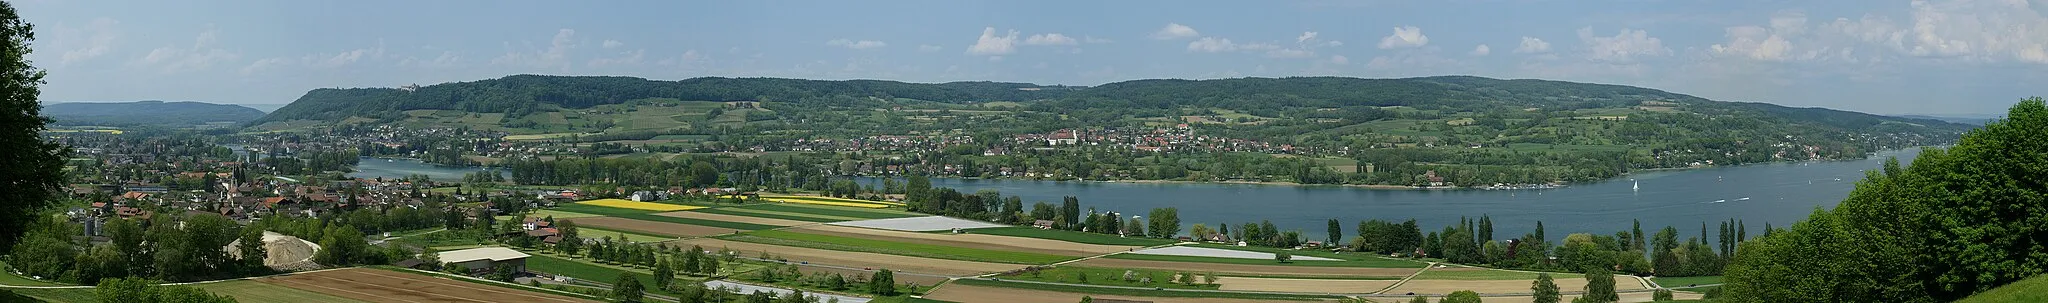 Image of Stein am Rhein